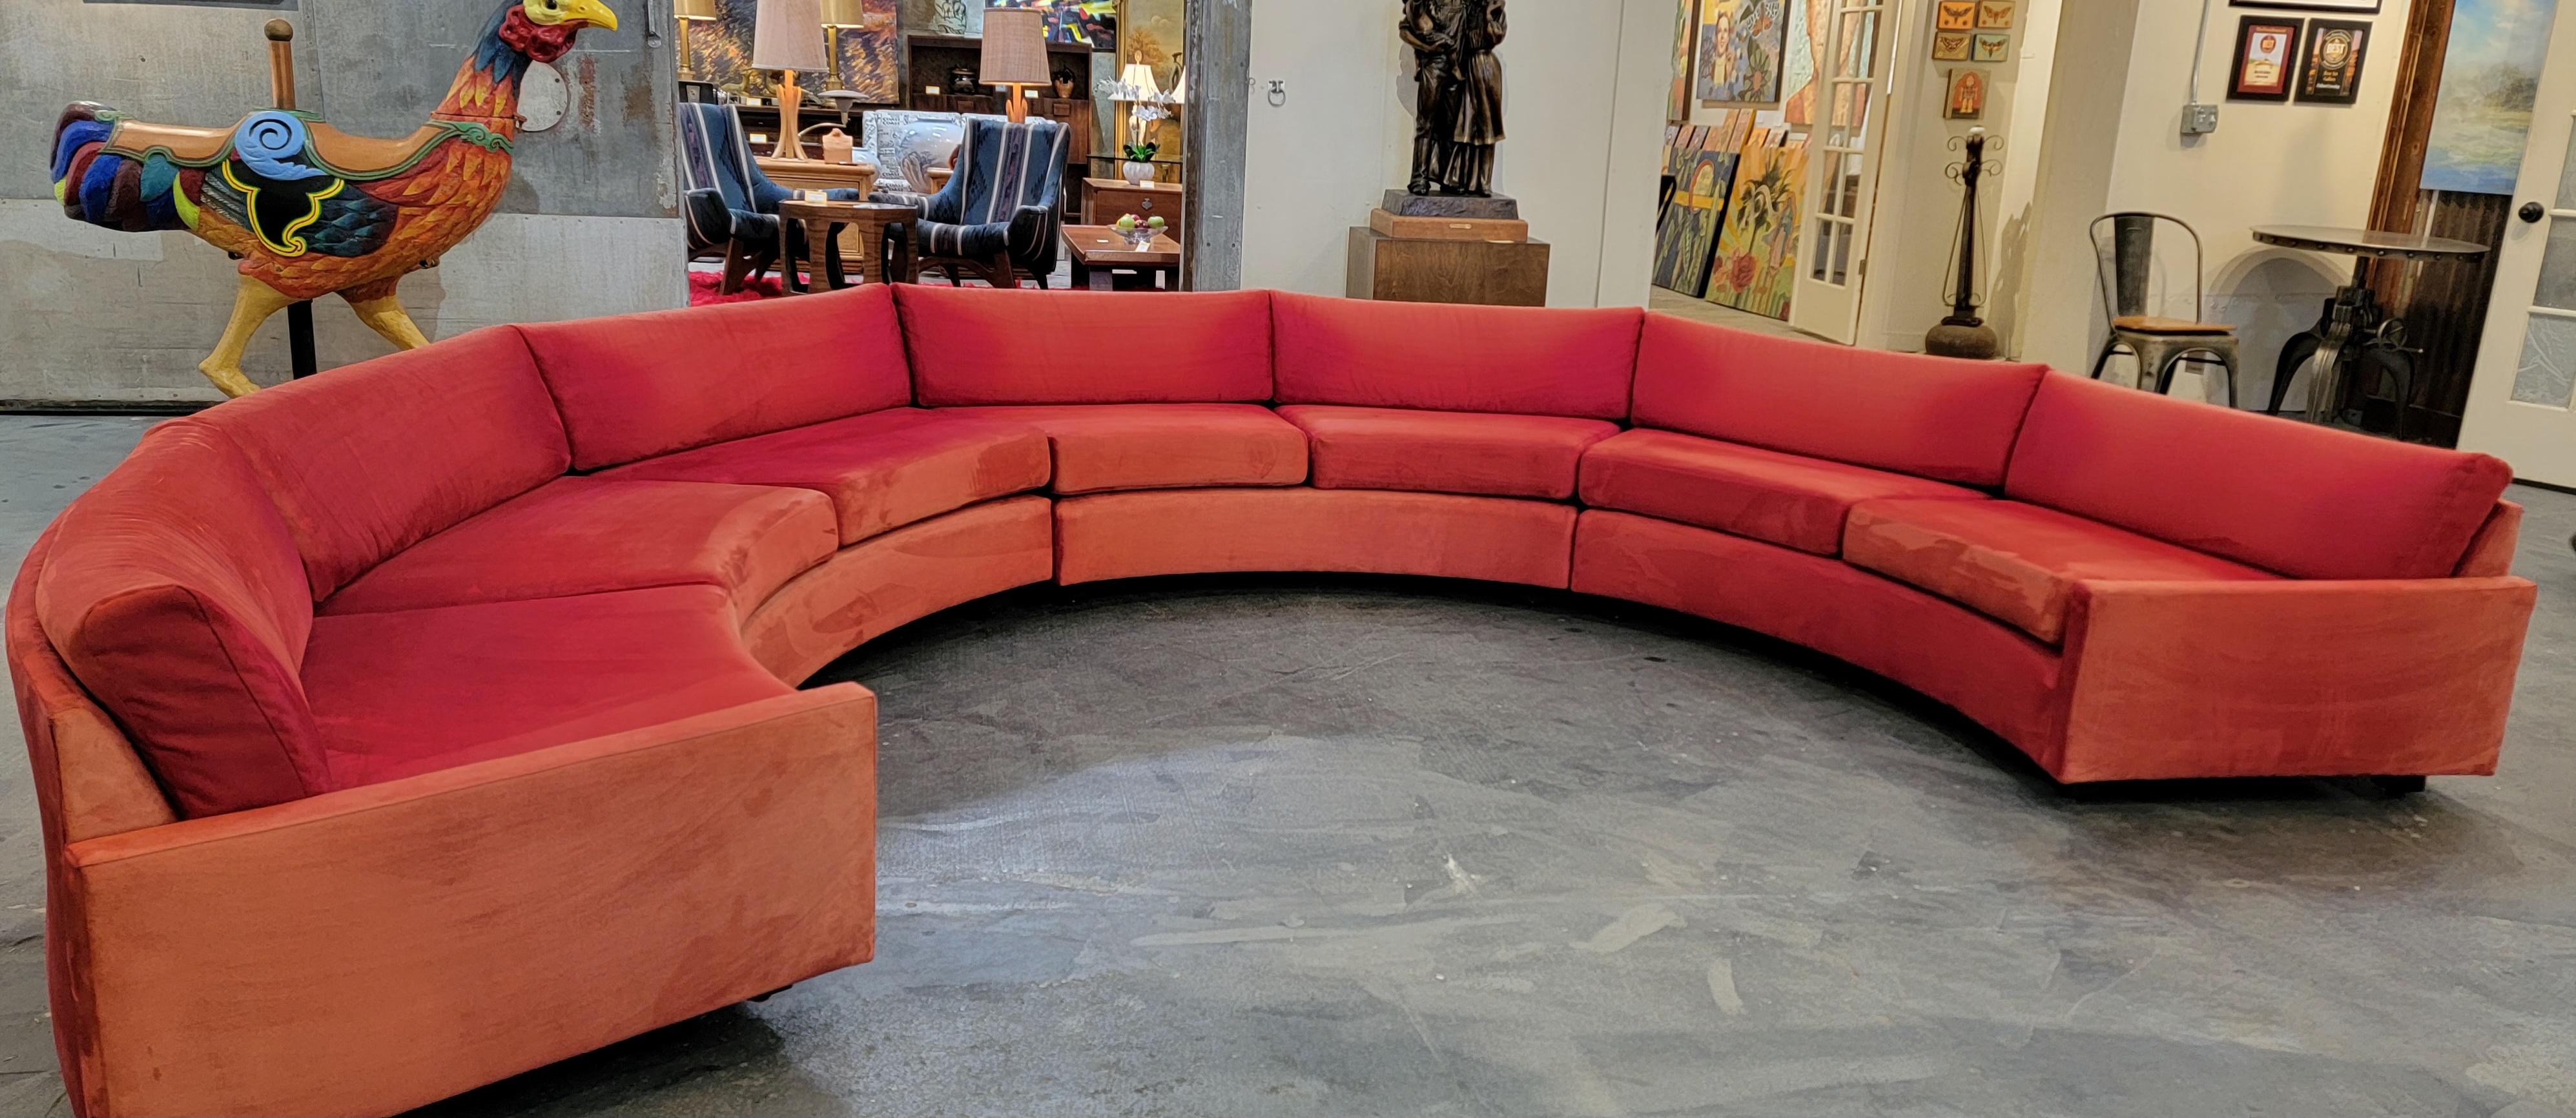 Milo Baughman Semi-Circular Sectional Sofa 3 Pieces 6